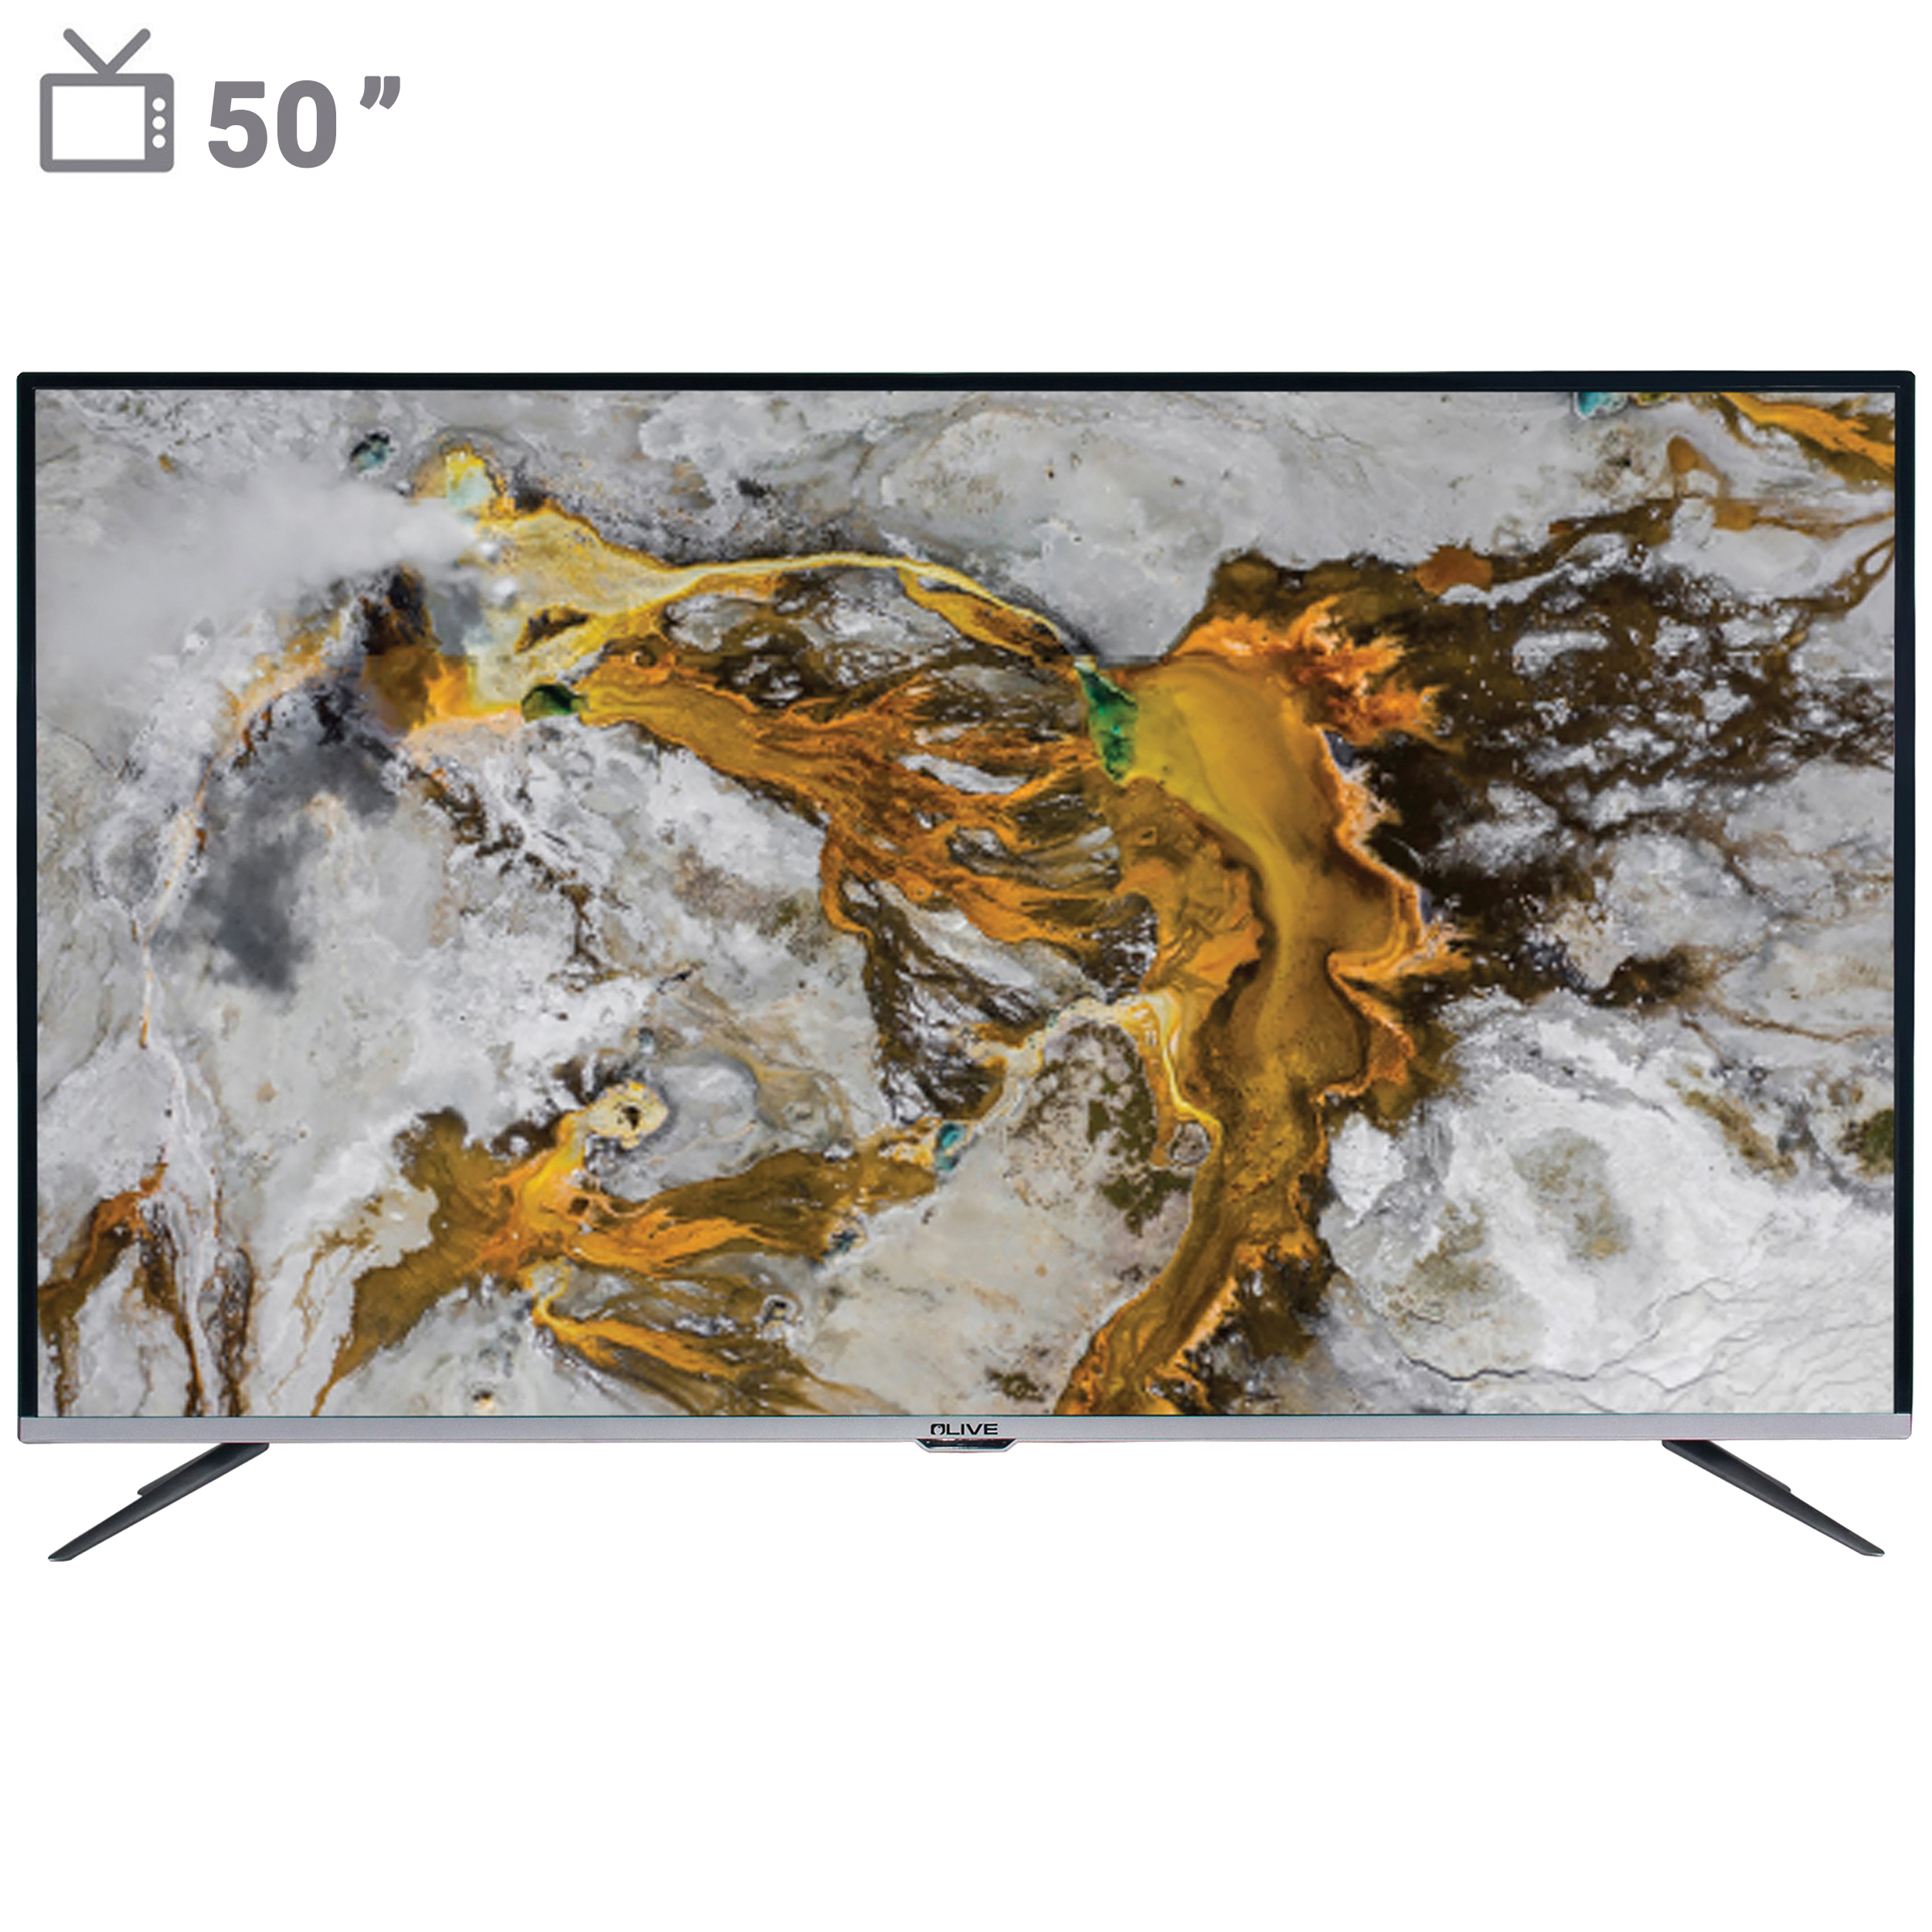 تلويزيون ال ای دی هوشمند الیو مدل 50UE8430 سایز 50 اینچ